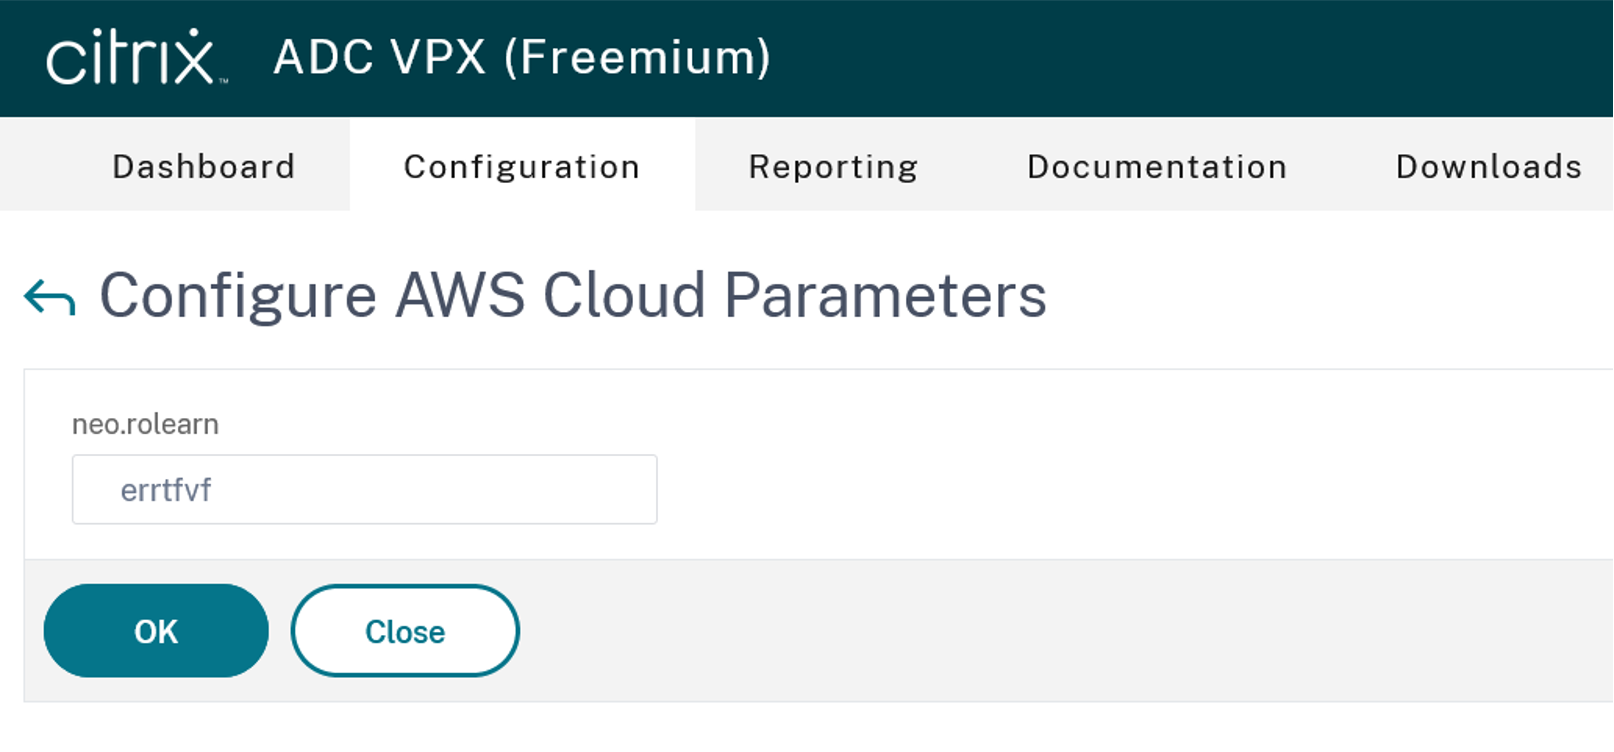 Configure AWS Cloud Parameters